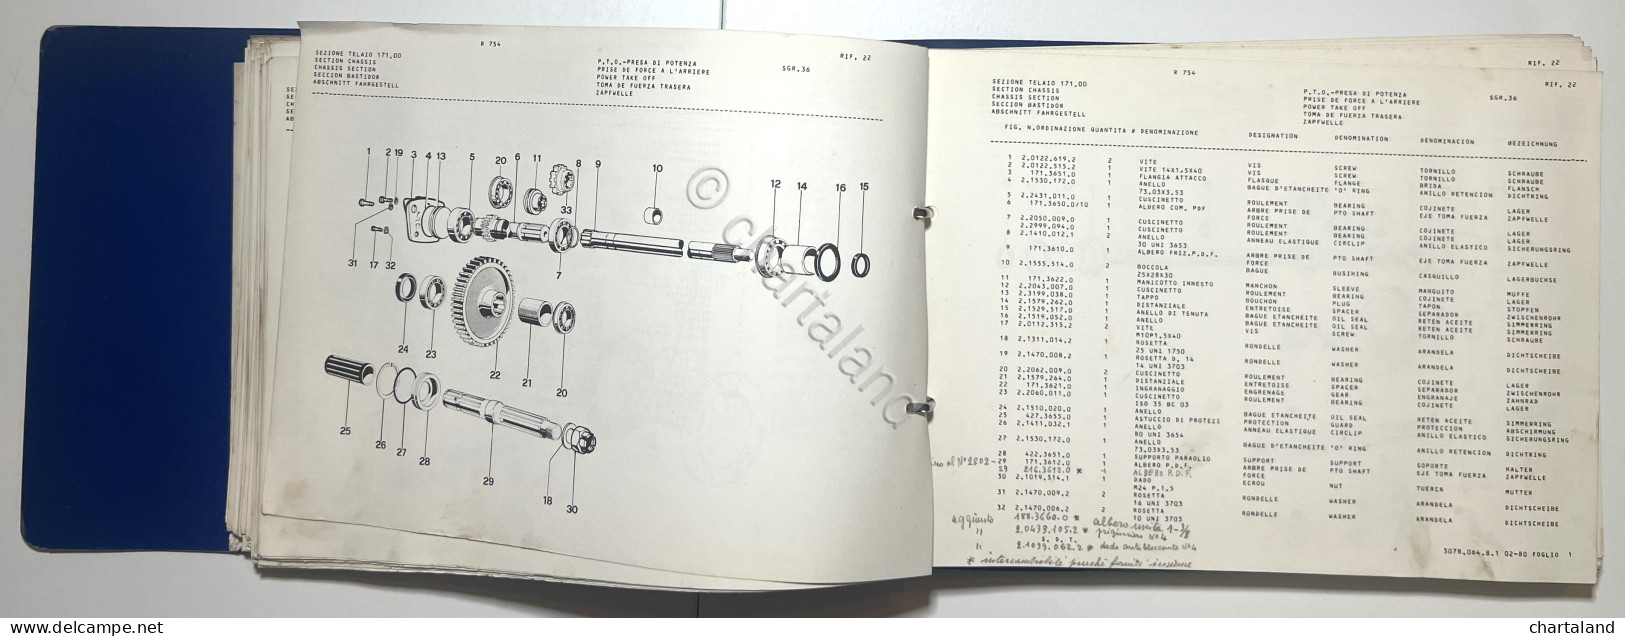 Catalogo Parti Per Ricambio Lamborghini Trattori - R 754 Potenza Blu - Ed. 1982 - Andere & Zonder Classificatie